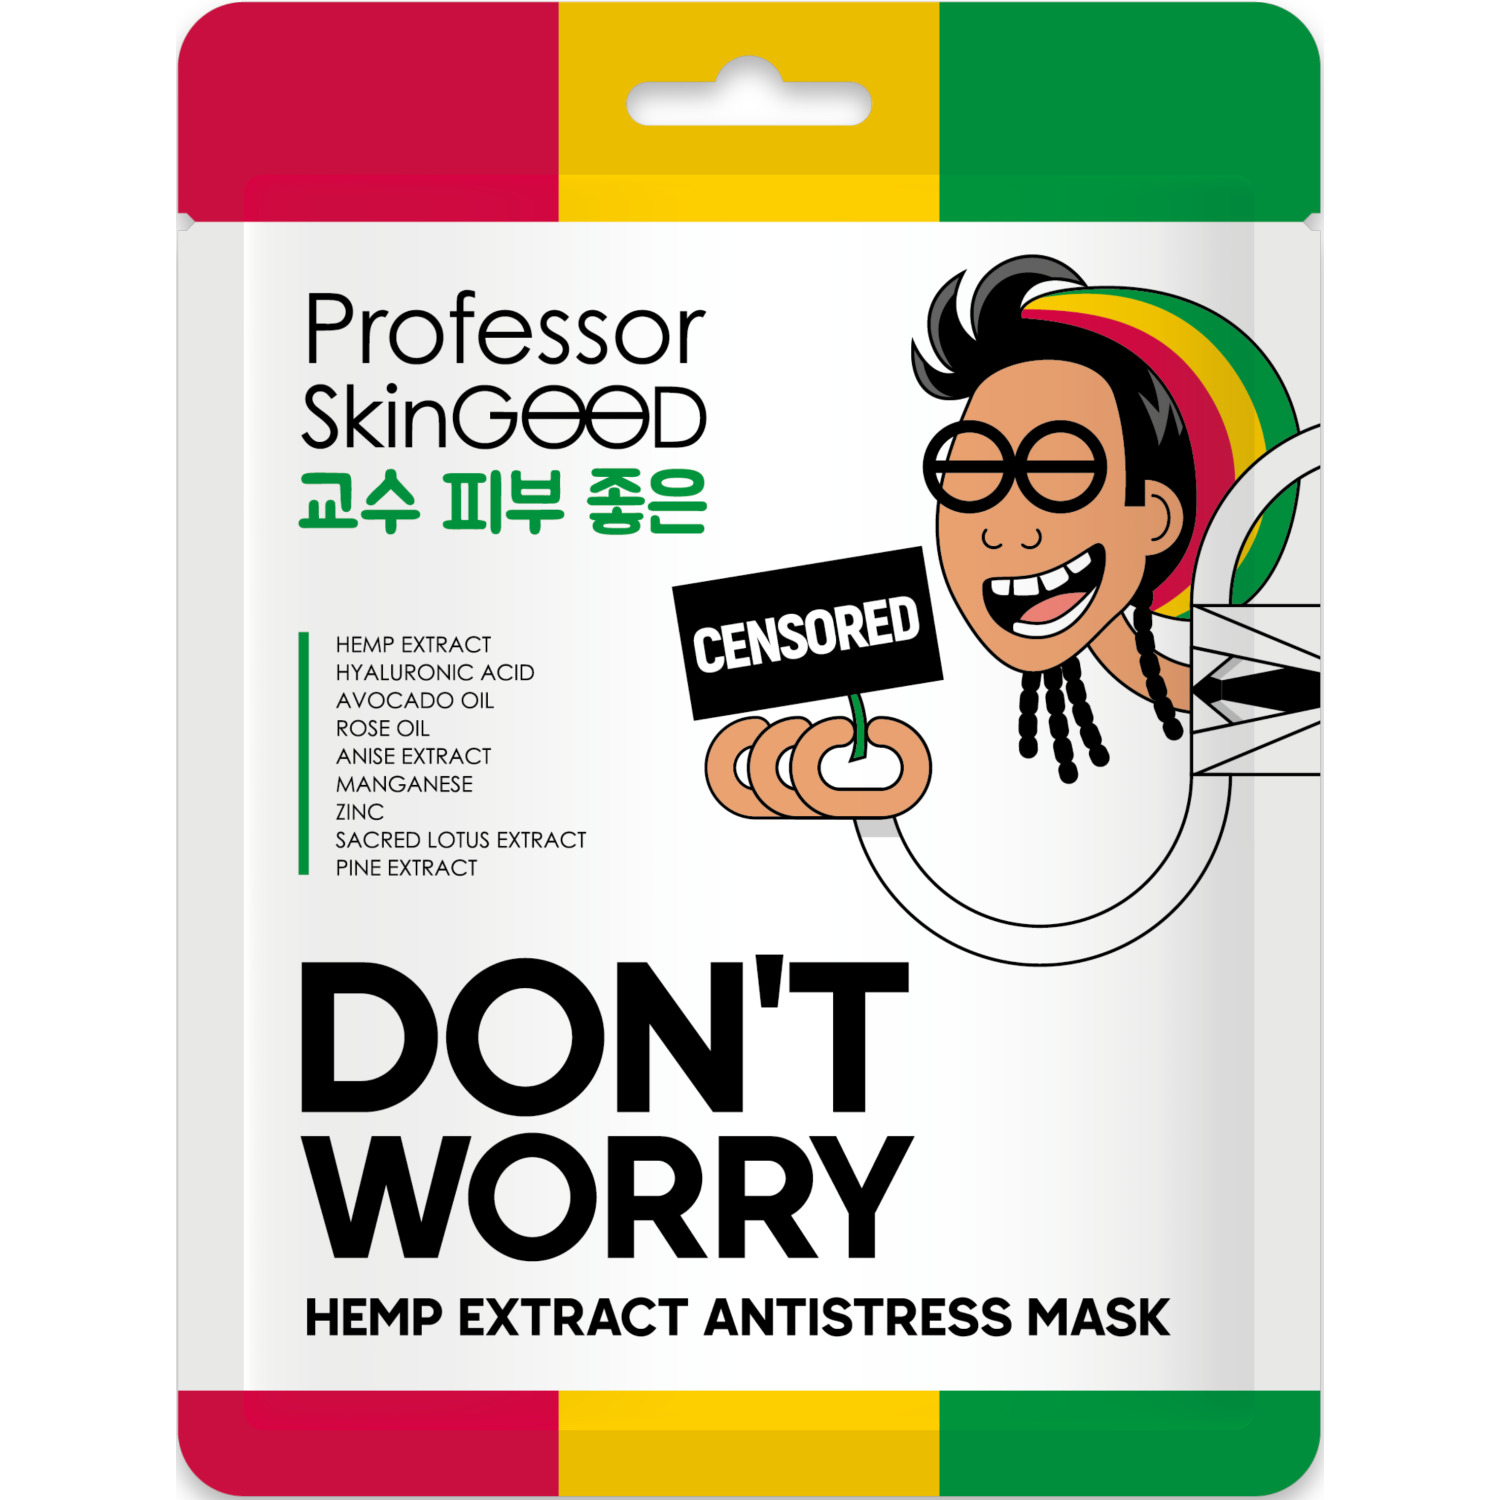 Маска для лица Professor SkinGOOD Hemp Extract Antistress Mask с экстрактом конопли, 25 мл переноска для животных ferplast atlas 5 open trasportino 28x41 5x26см в ассортименте